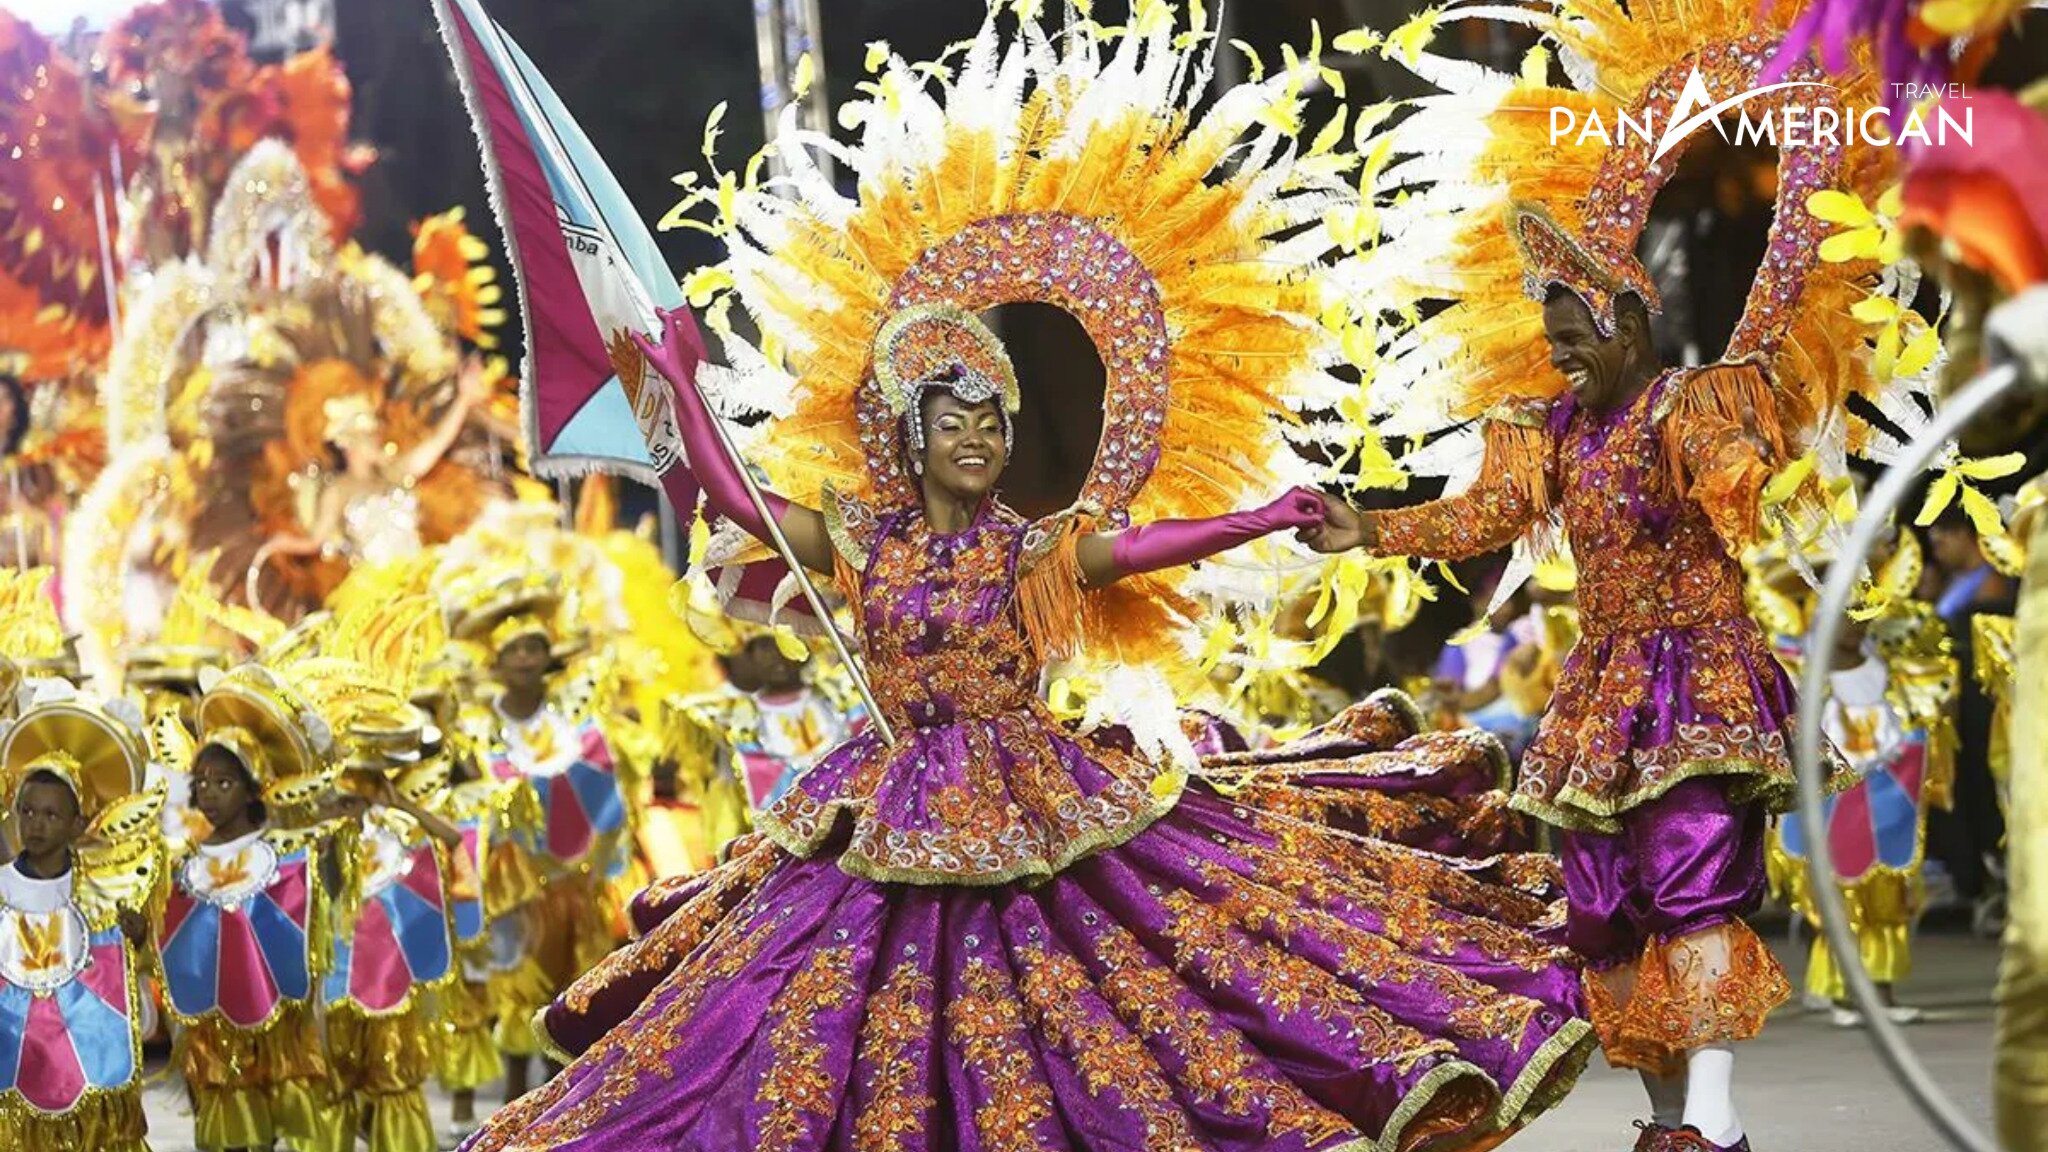 Điệu nhảy samba của người Brazil đã làm nên sắc màu riêng cho lễ hội Carnival